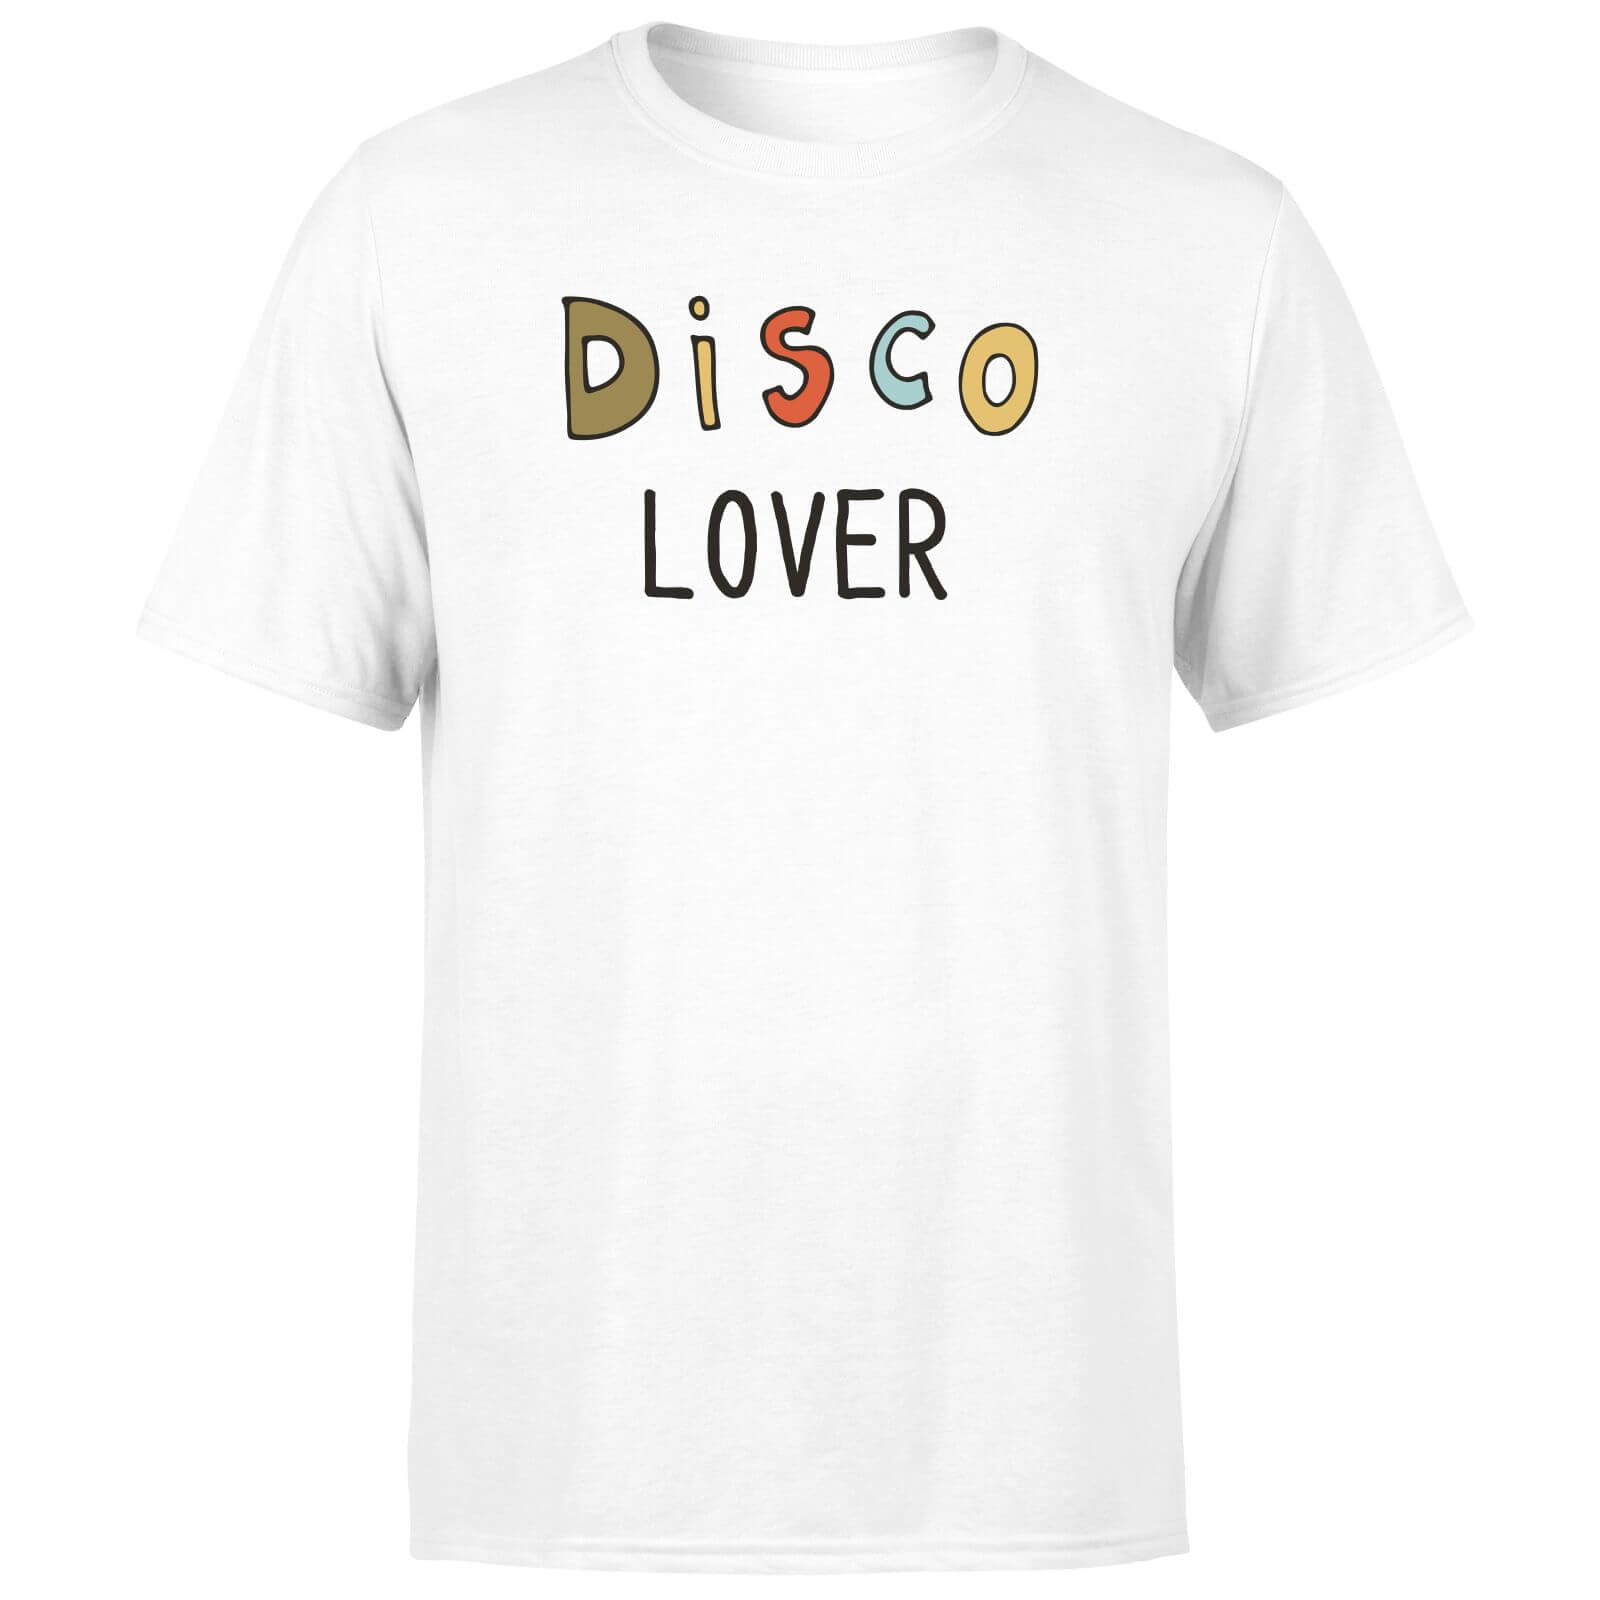 Disco Lover Men's T-Shirt - White - XS - White